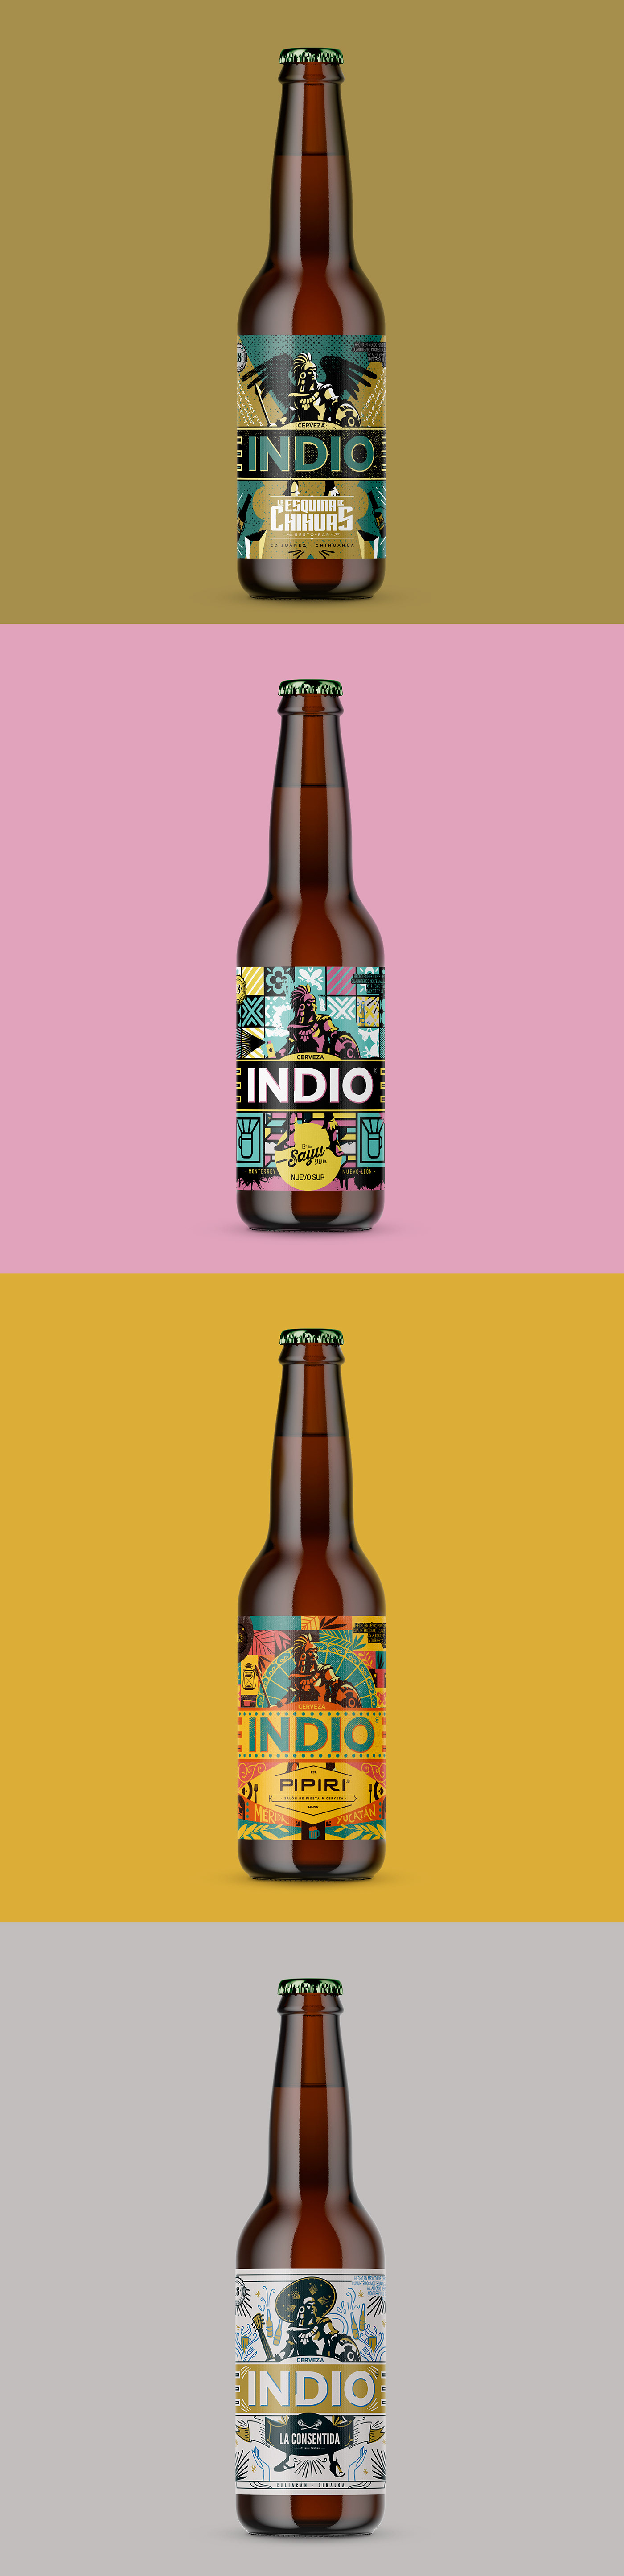 Pueblos de México Unidos Bares de México Cerveza Indio